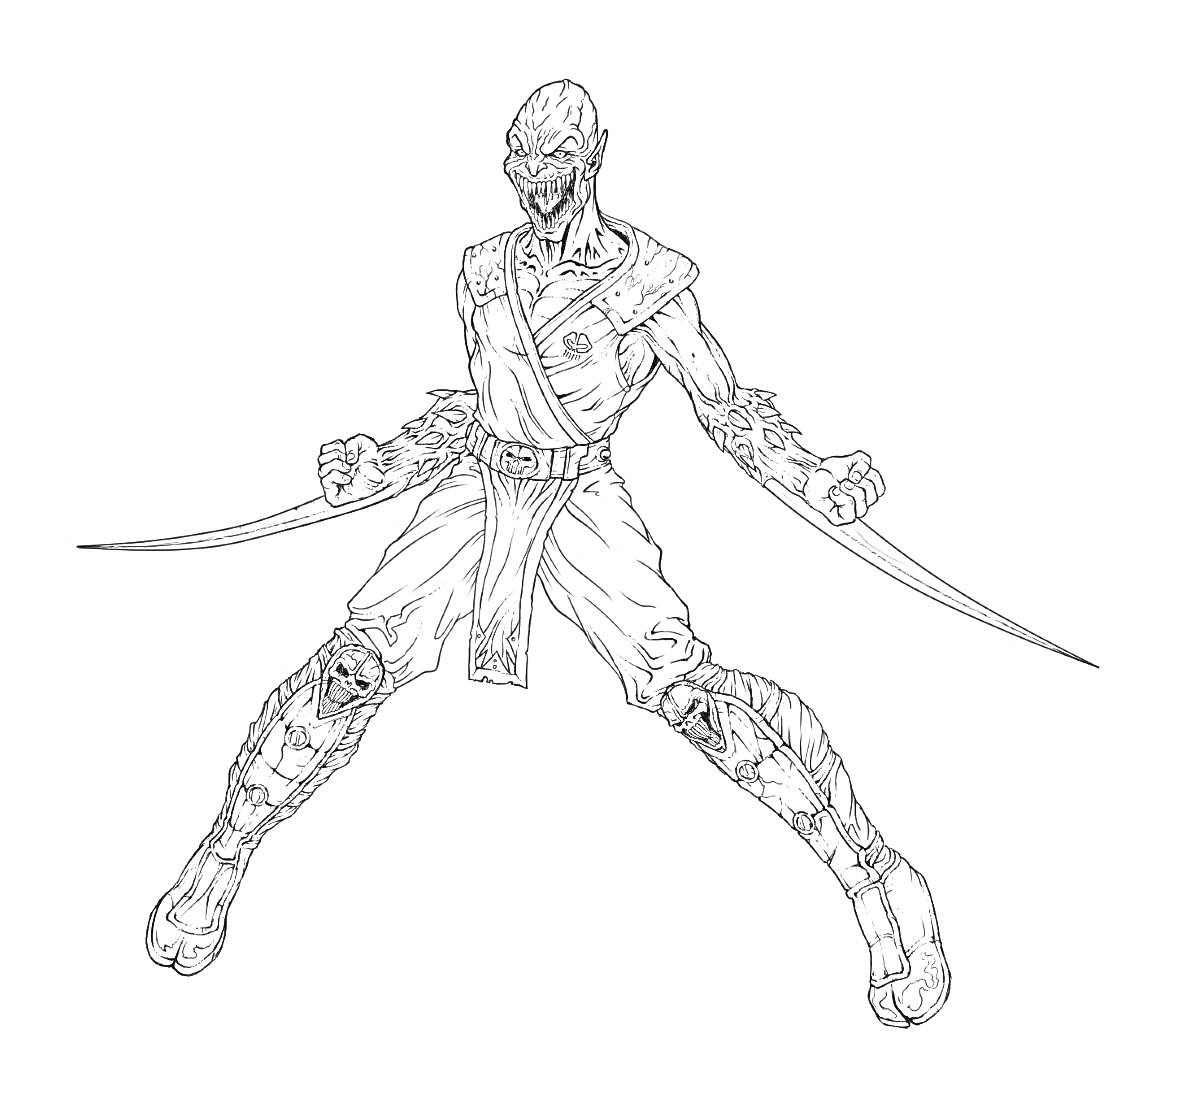 Воин из Мортал Комбат с двумя кинжалами, в рваной одежде и маске, с оголённым торсом и боевыми наплечниками